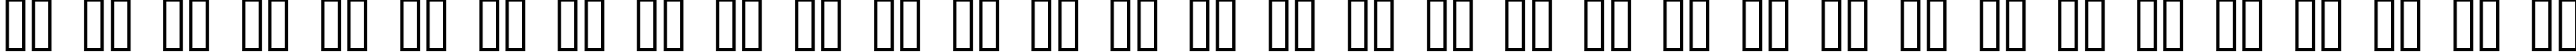 Пример написания русского алфавита шрифтом 1998A